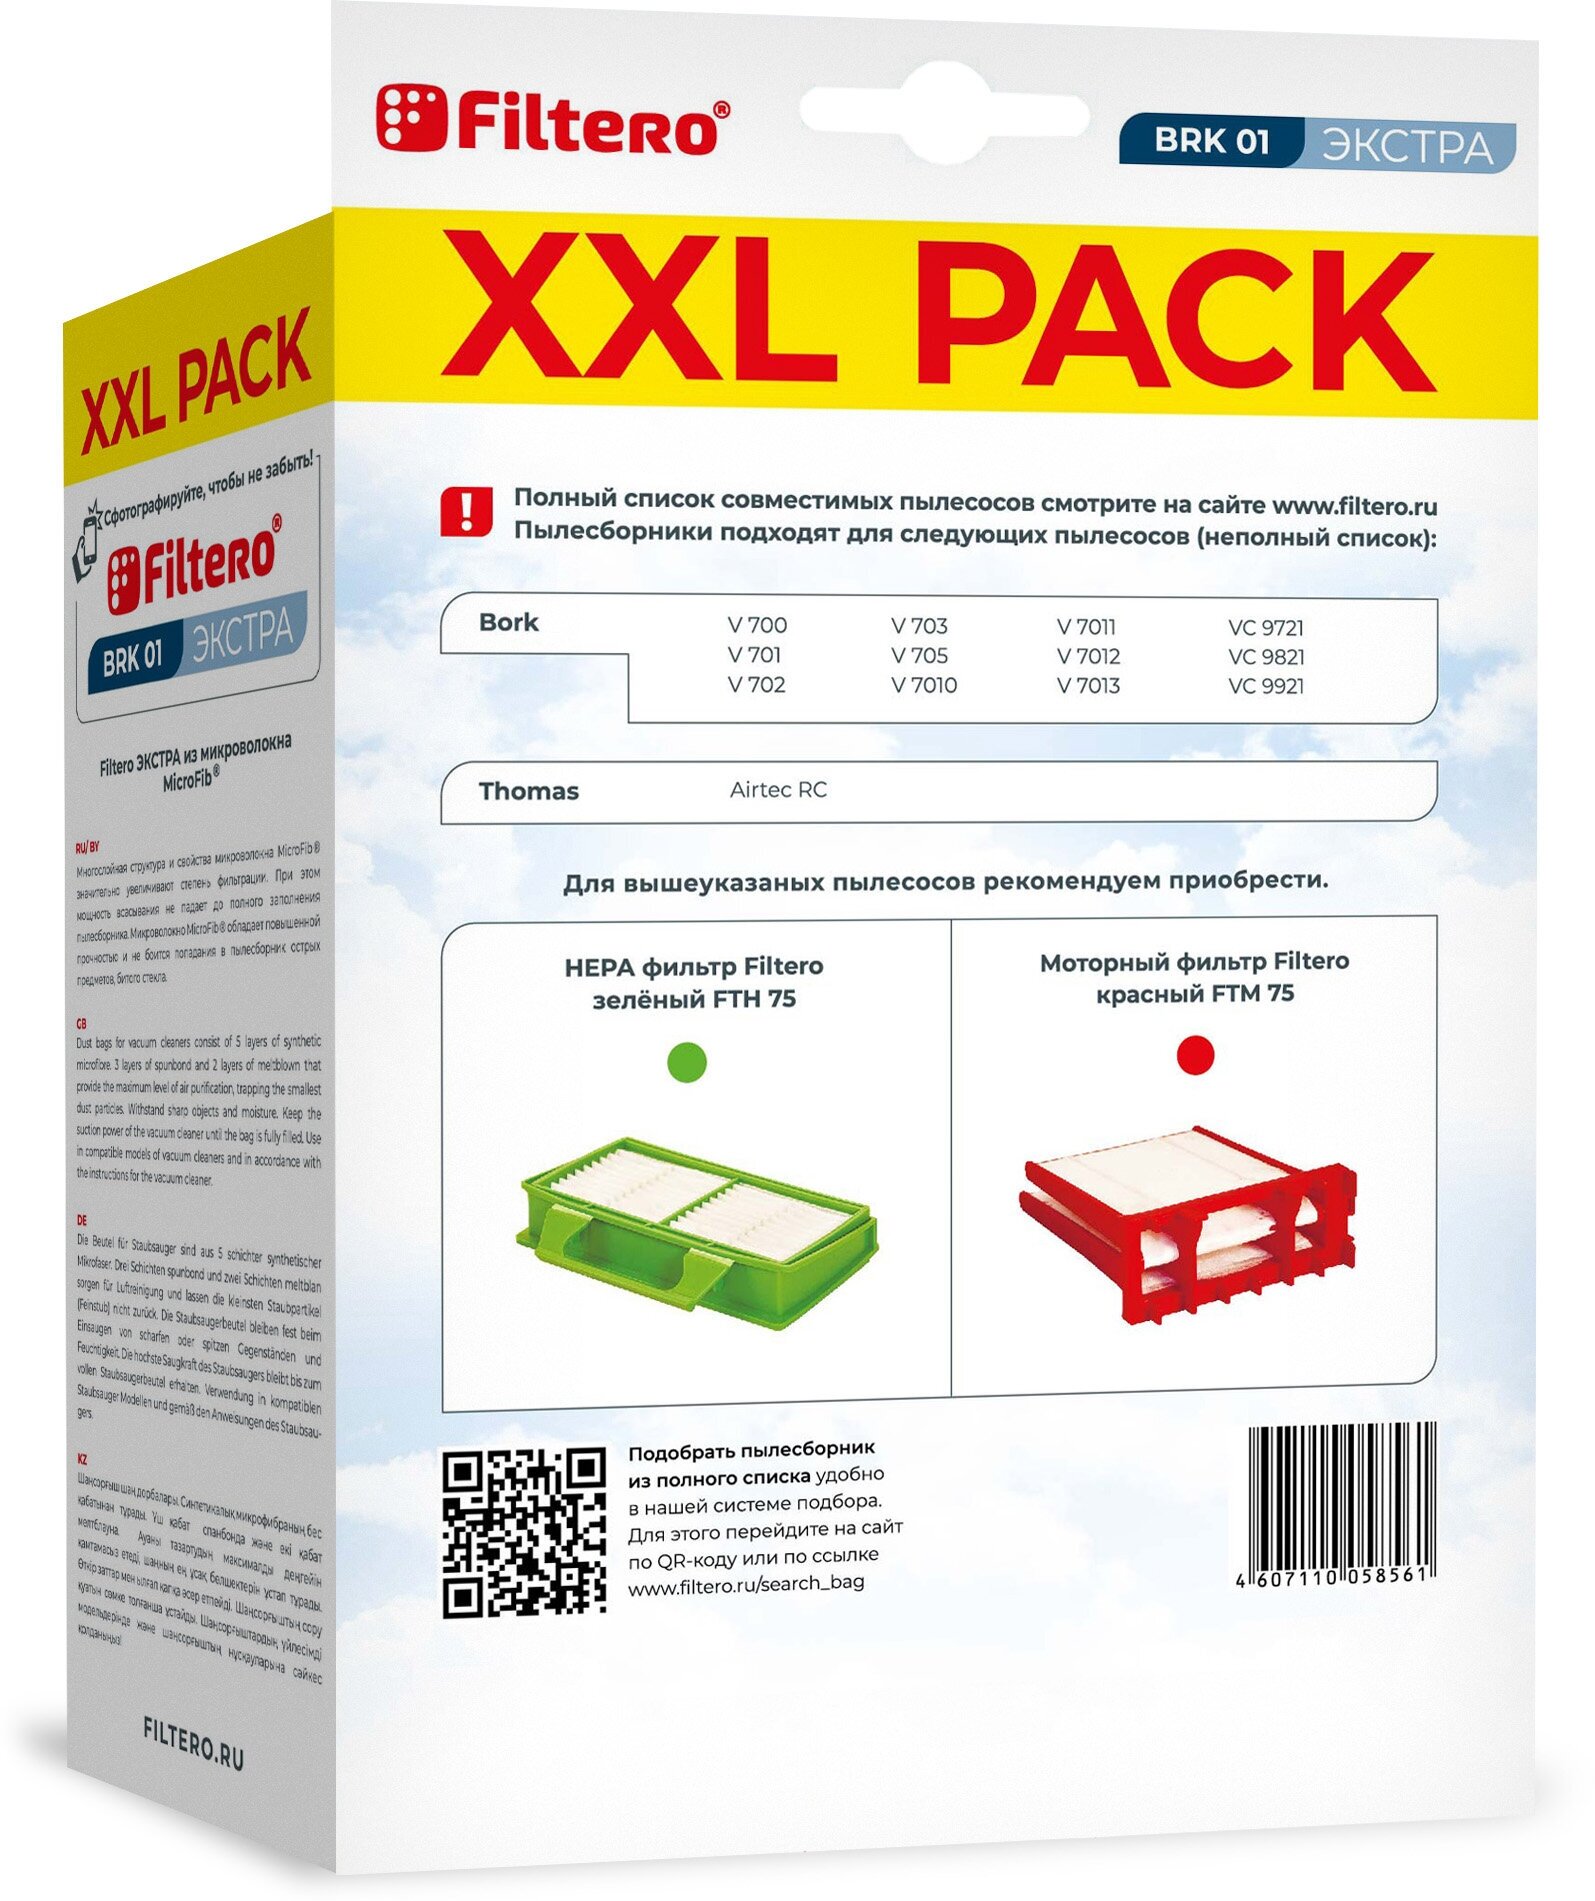 Мешки-пылесборники Filtero BRK 01 XXL Pack Экстра, для пылесосов Bork, синтетические, 6 штук